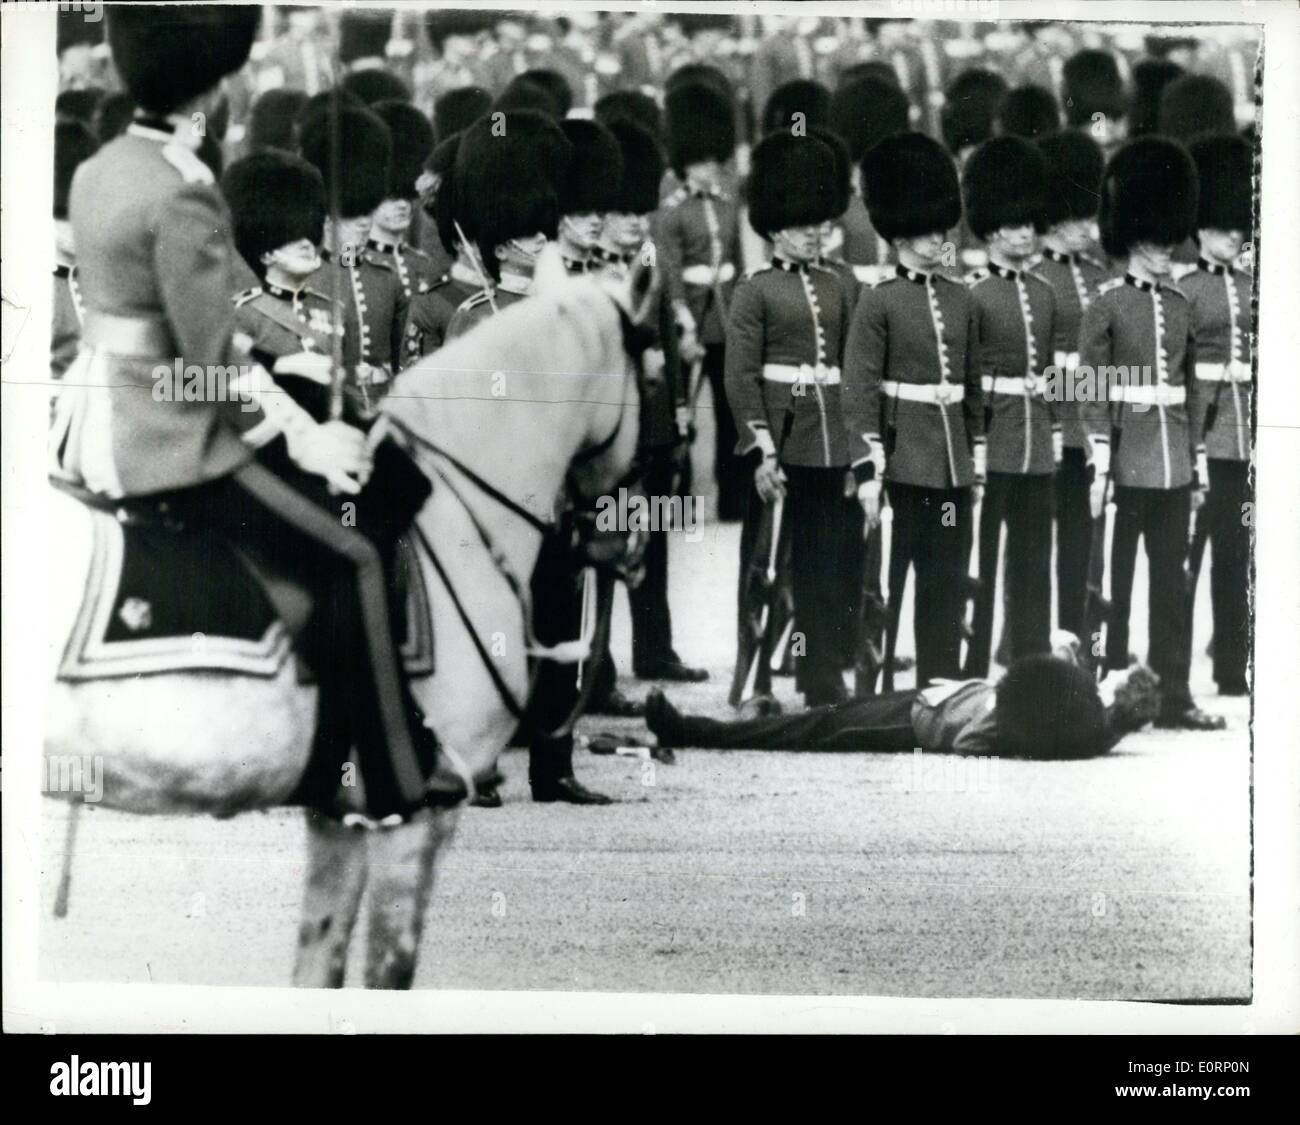 Avril 04, 1960 - Des gardes s'évanouit lors de la parade : photo montre un guardsman est sujette aux pieds de ses camarades sur Horse Guards Parade aujourd'hui, après qu'il s'était évanoui pendant le Défilé des troupes à la personne avant de Gaulle, président de la France, qui est ici sur une visite d'Etat de trois jours. Banque D'Images